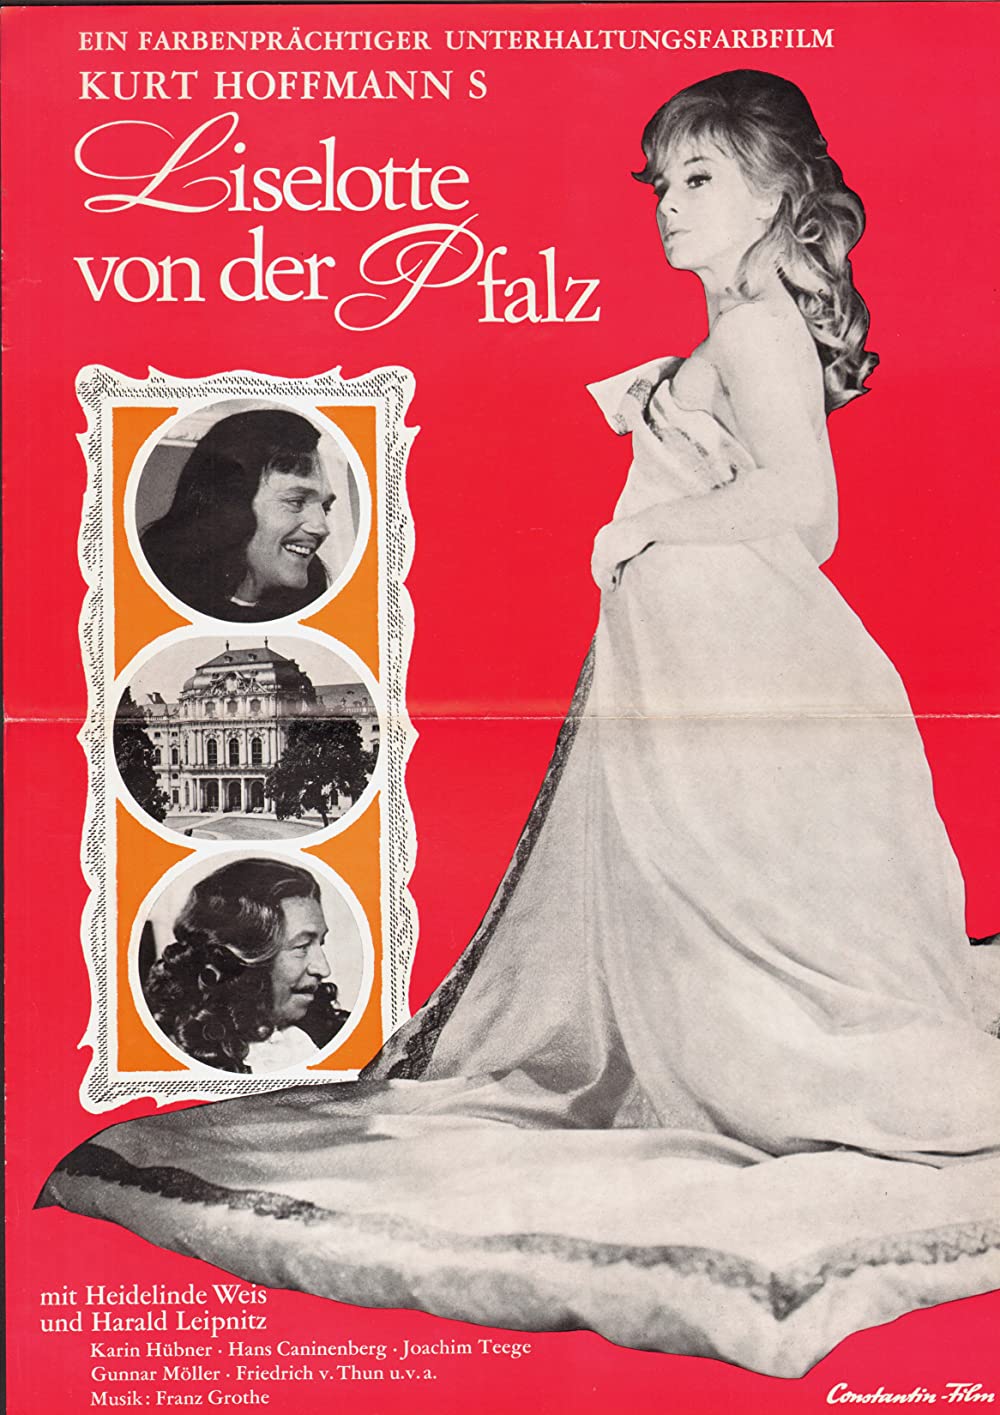 Filmbeschreibung zu Liselotte von der Pfalz (1966)